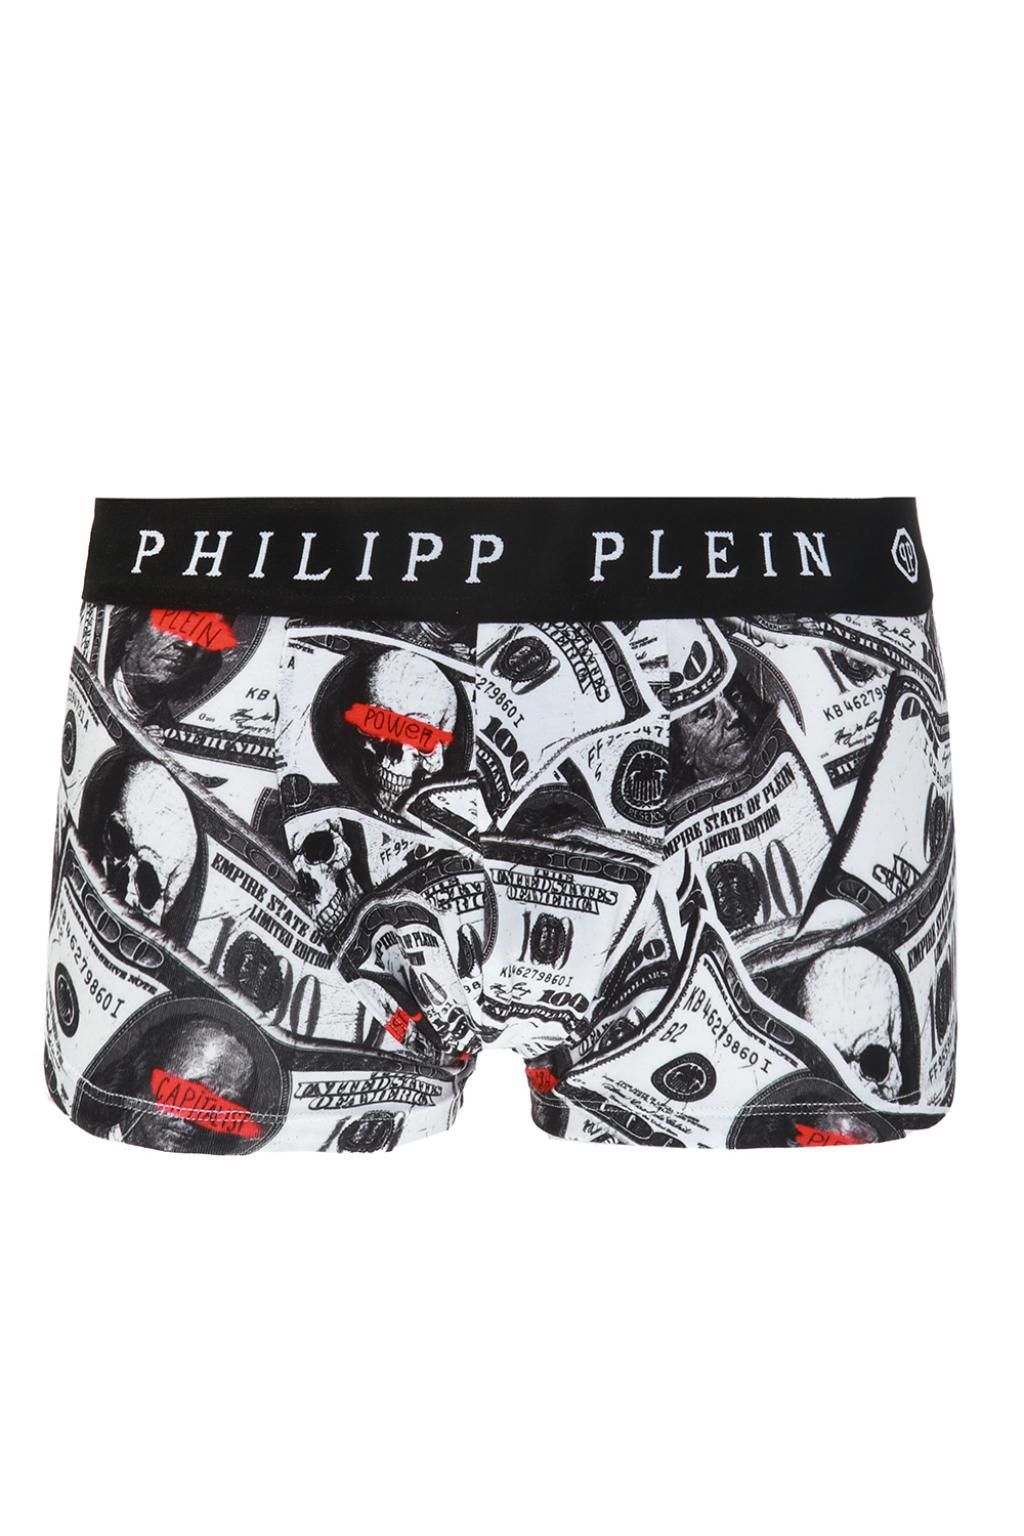 philipp plein boxer shorts